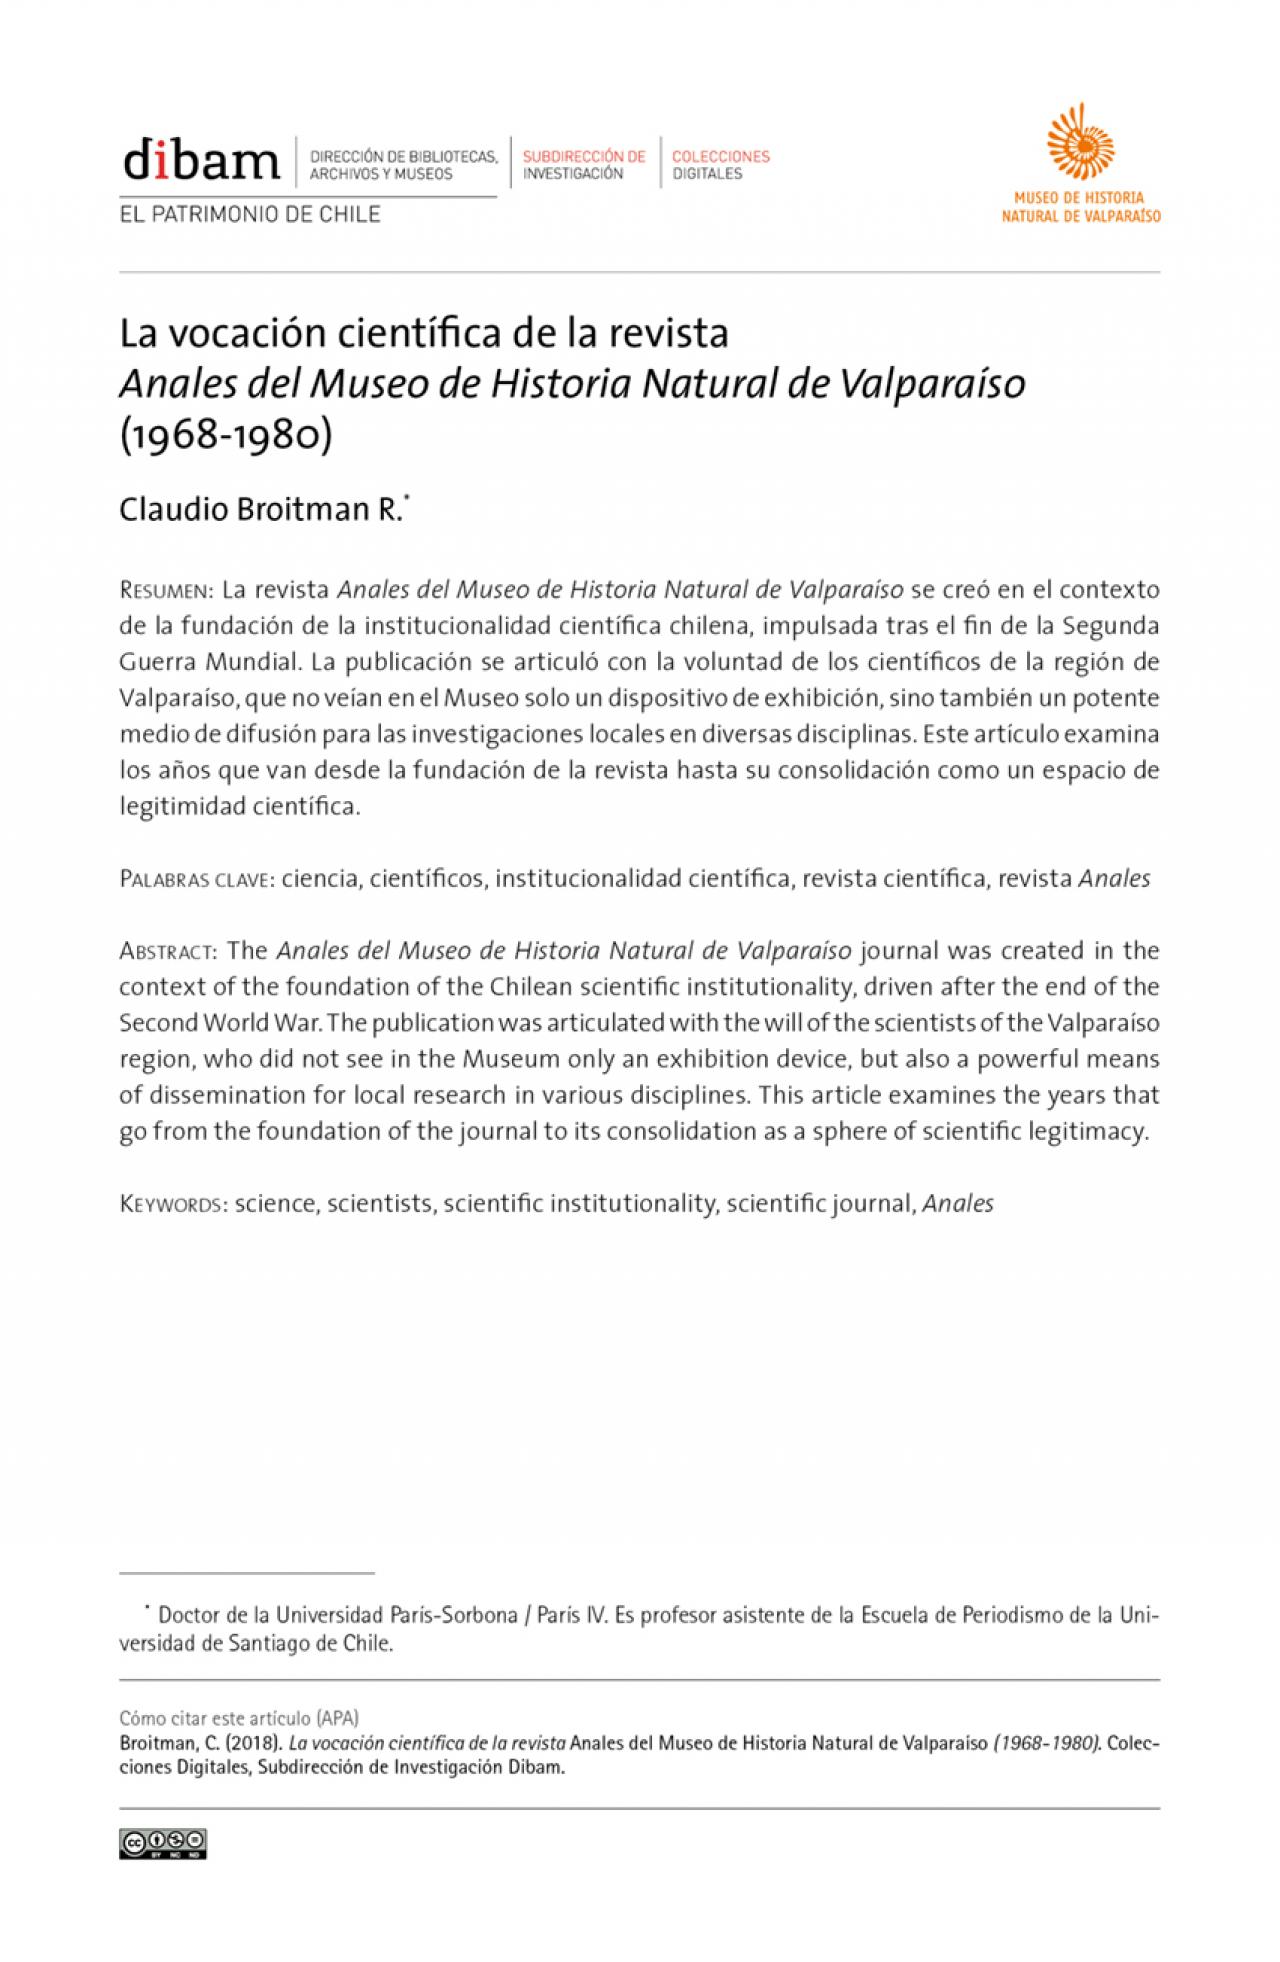 La vocación científica de la revista Anales del Museo de Historia Natural de Valparaíso (1968-1980)